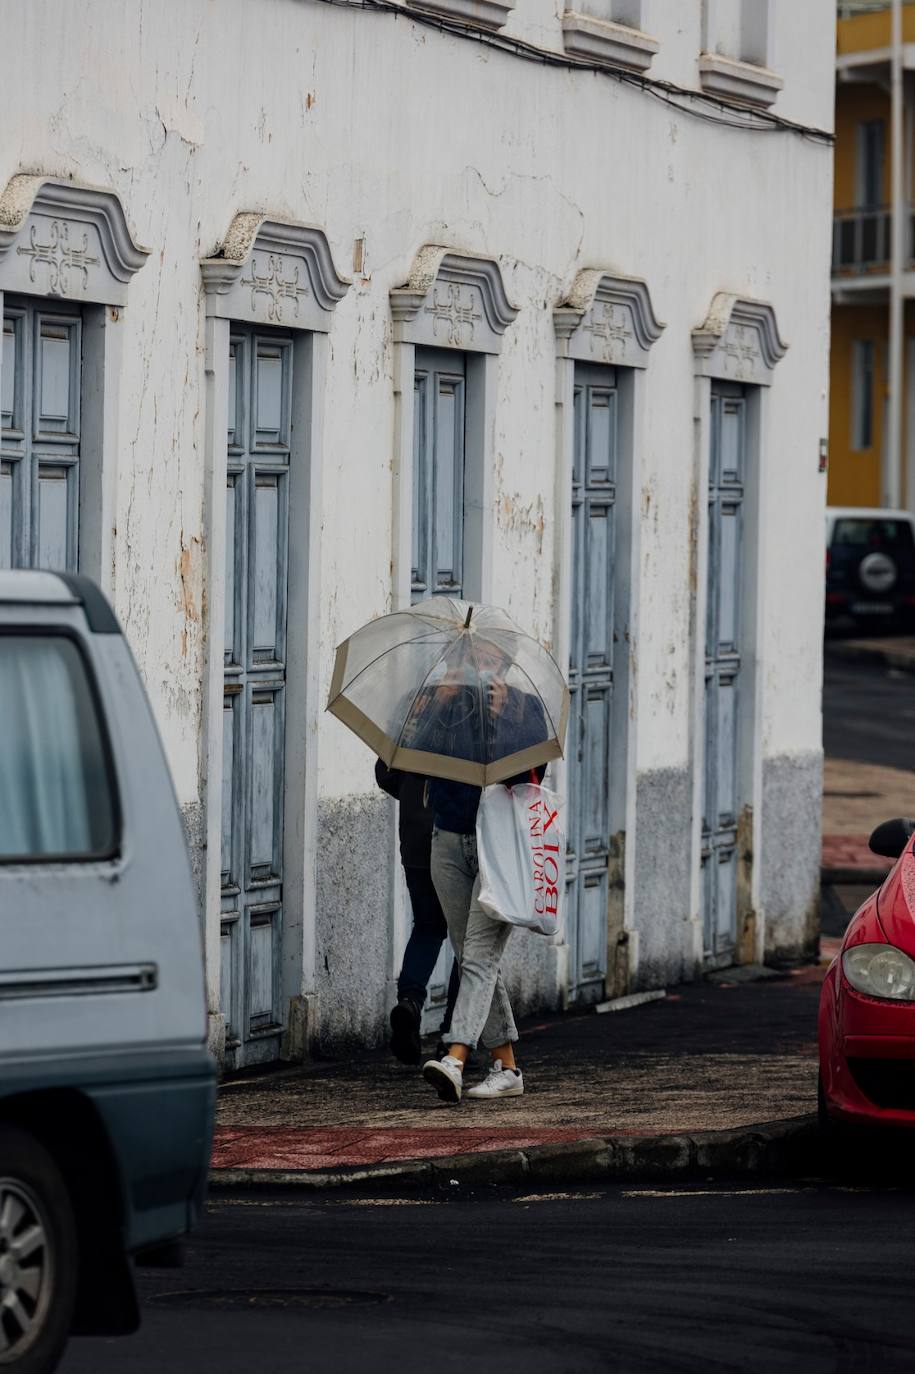 Fotos: La Palma no descansa retirando cenizas de sus calles